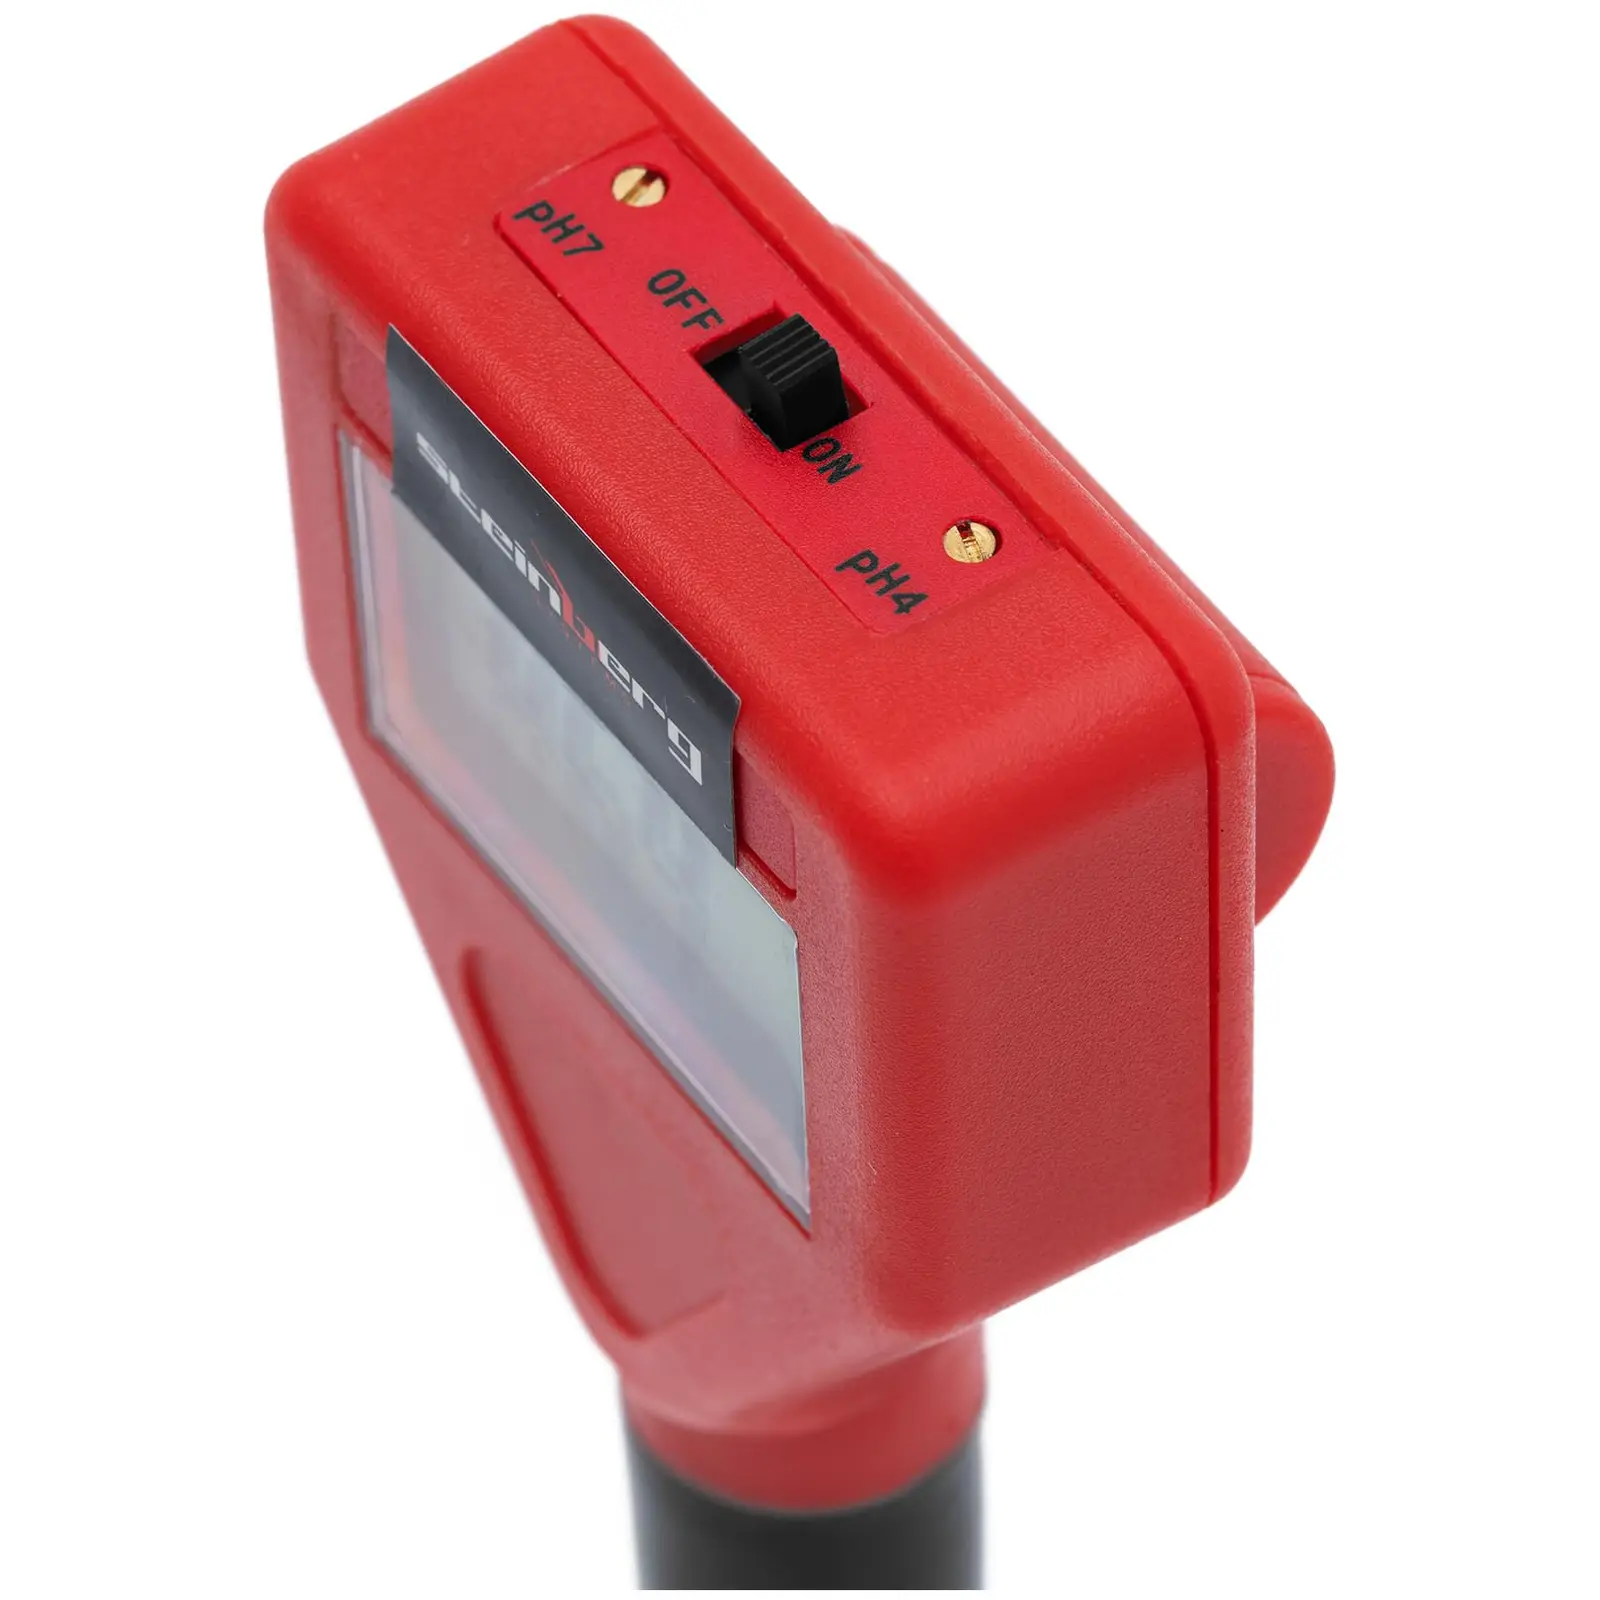 Medidor de pH com sonda - LCD - 0-14 pH